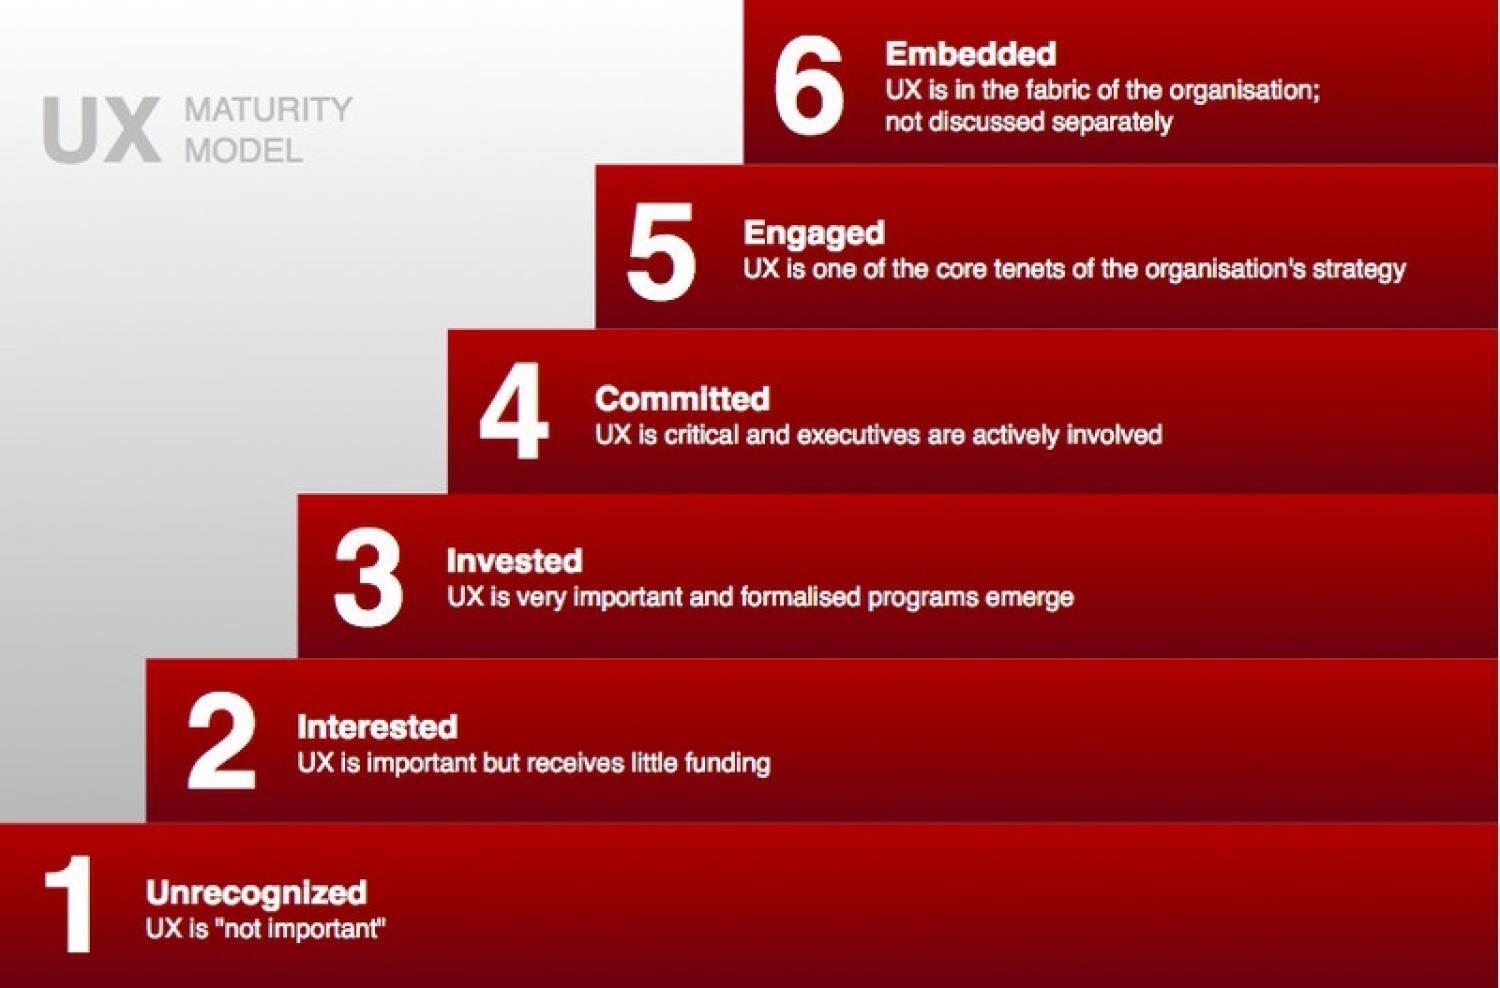 Illustrasjon av de seks nivåene av UX-modenhet i bedriften: 1. Recognized, 2. Interested, 3. Invested, 4. Committed, 5. Engaged og 6. Embedded